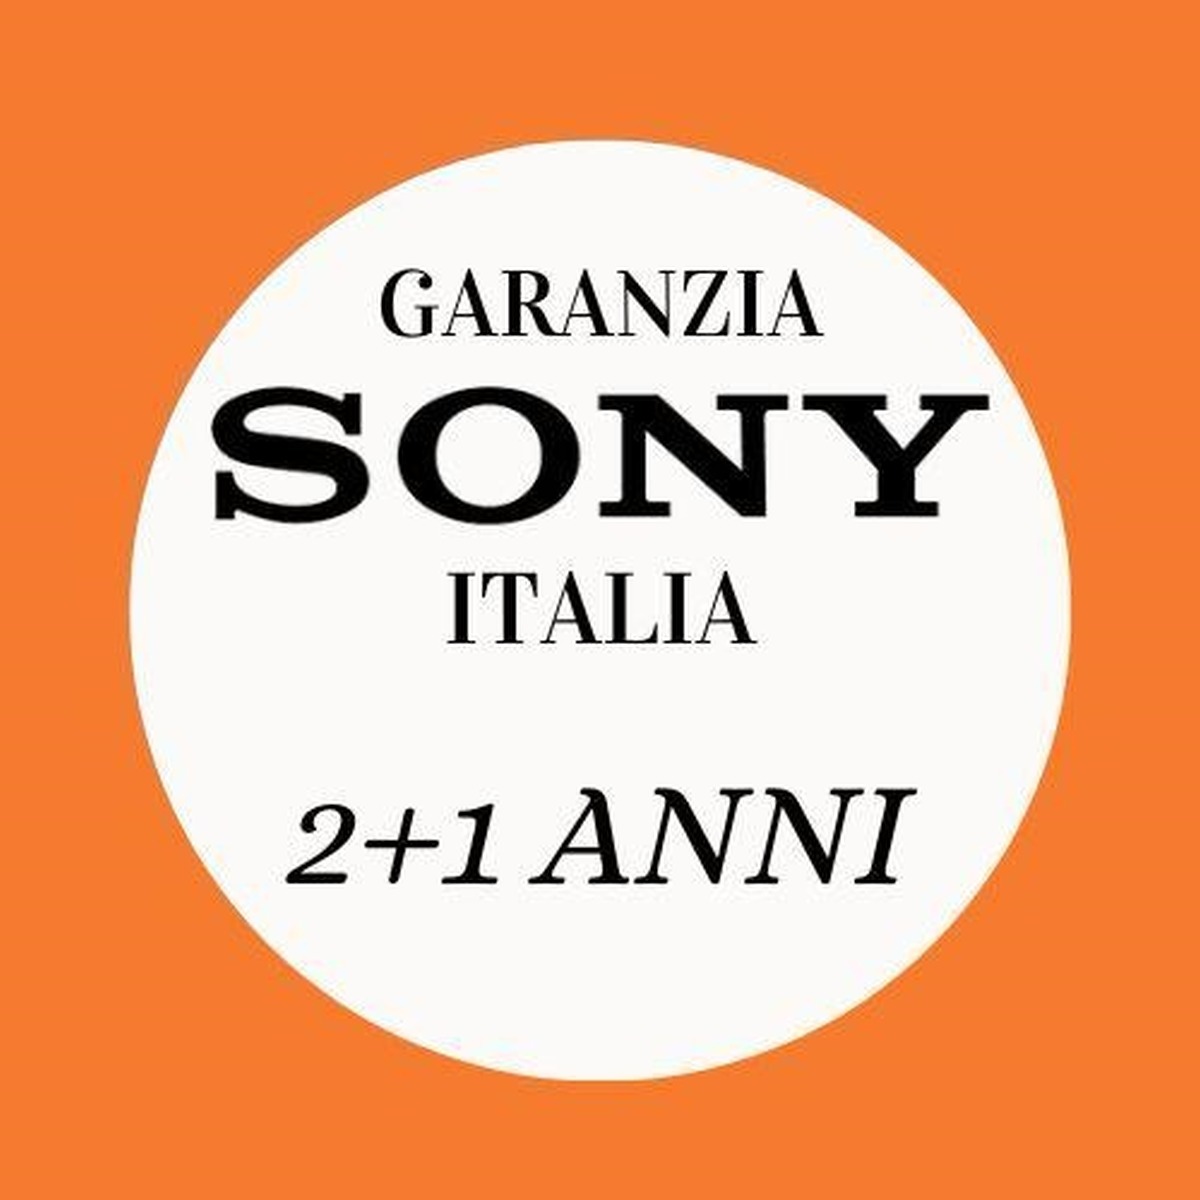 Sony garanzia 2+1